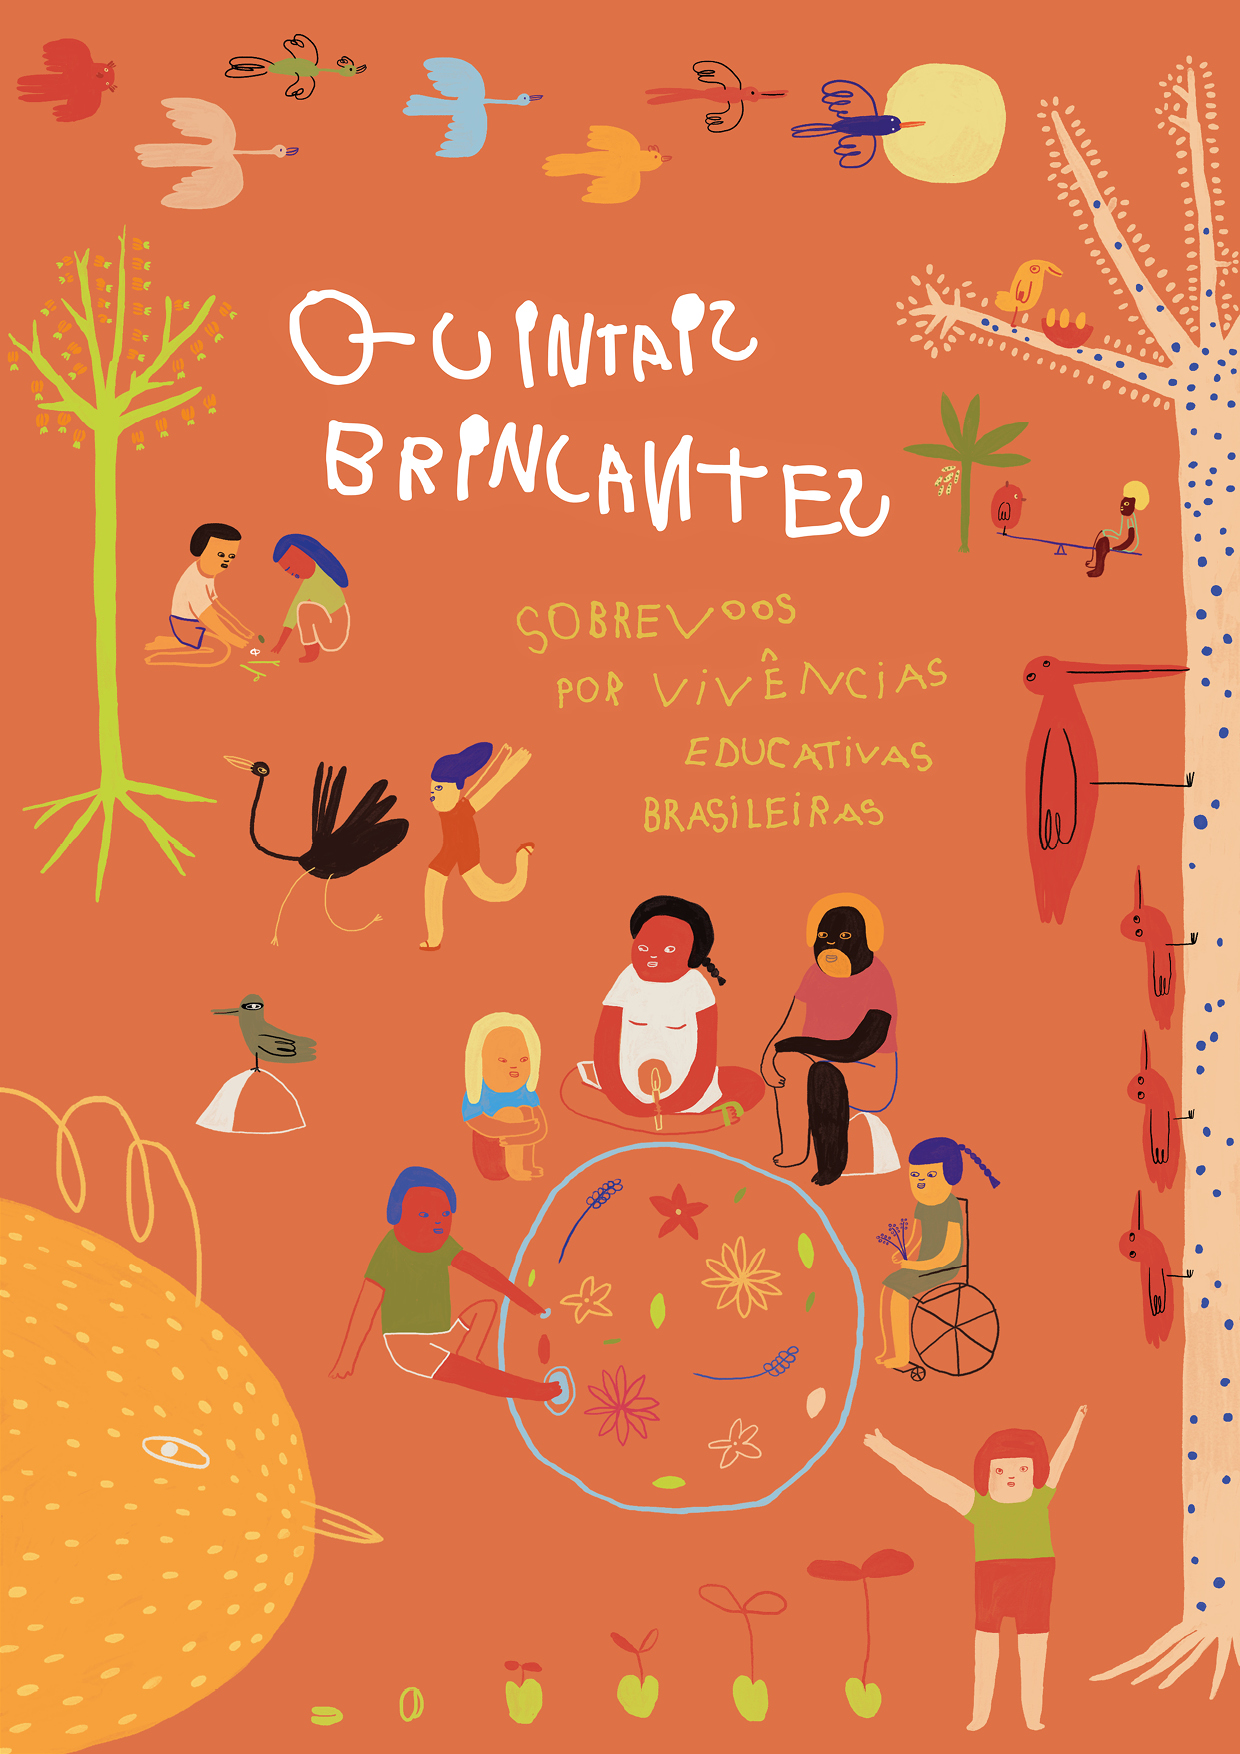 ilustração da capa do livro “Quintais Brincantes - Sobrevoos por Vivências Educativas Brasileiras'', com desenhos de crianças brincando com pedrinhas, sentadas em roda, sobre um fundo laranja, que também tem pássaros voando.